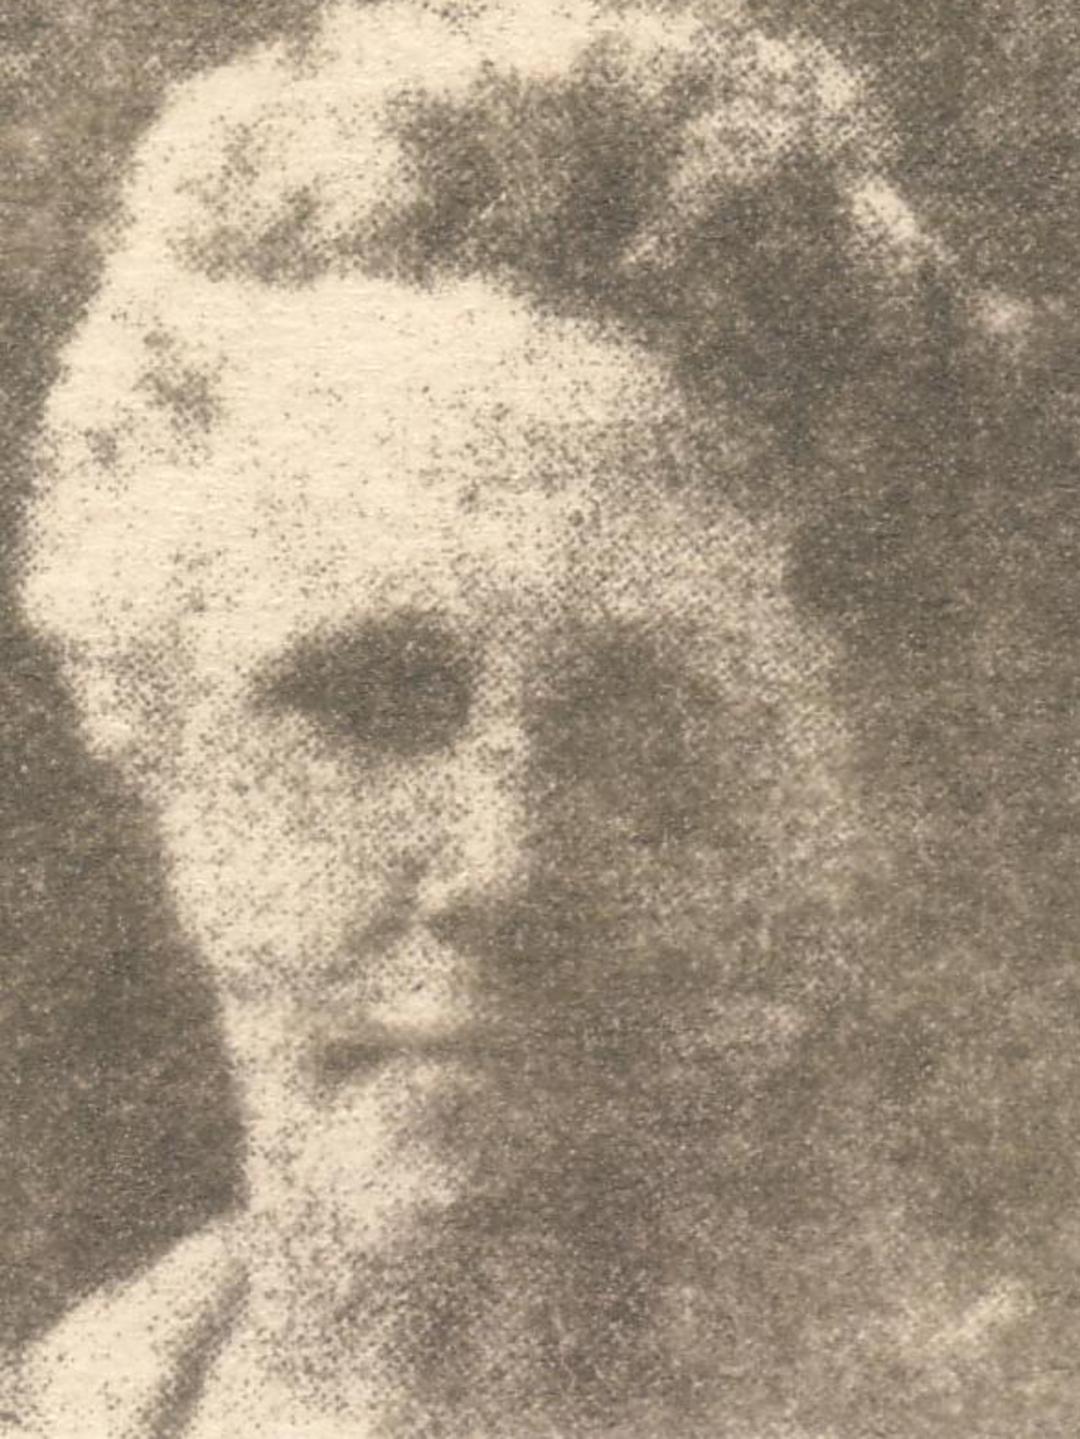 Lydia Elizabeth Avery (1853 - 1896) Profile